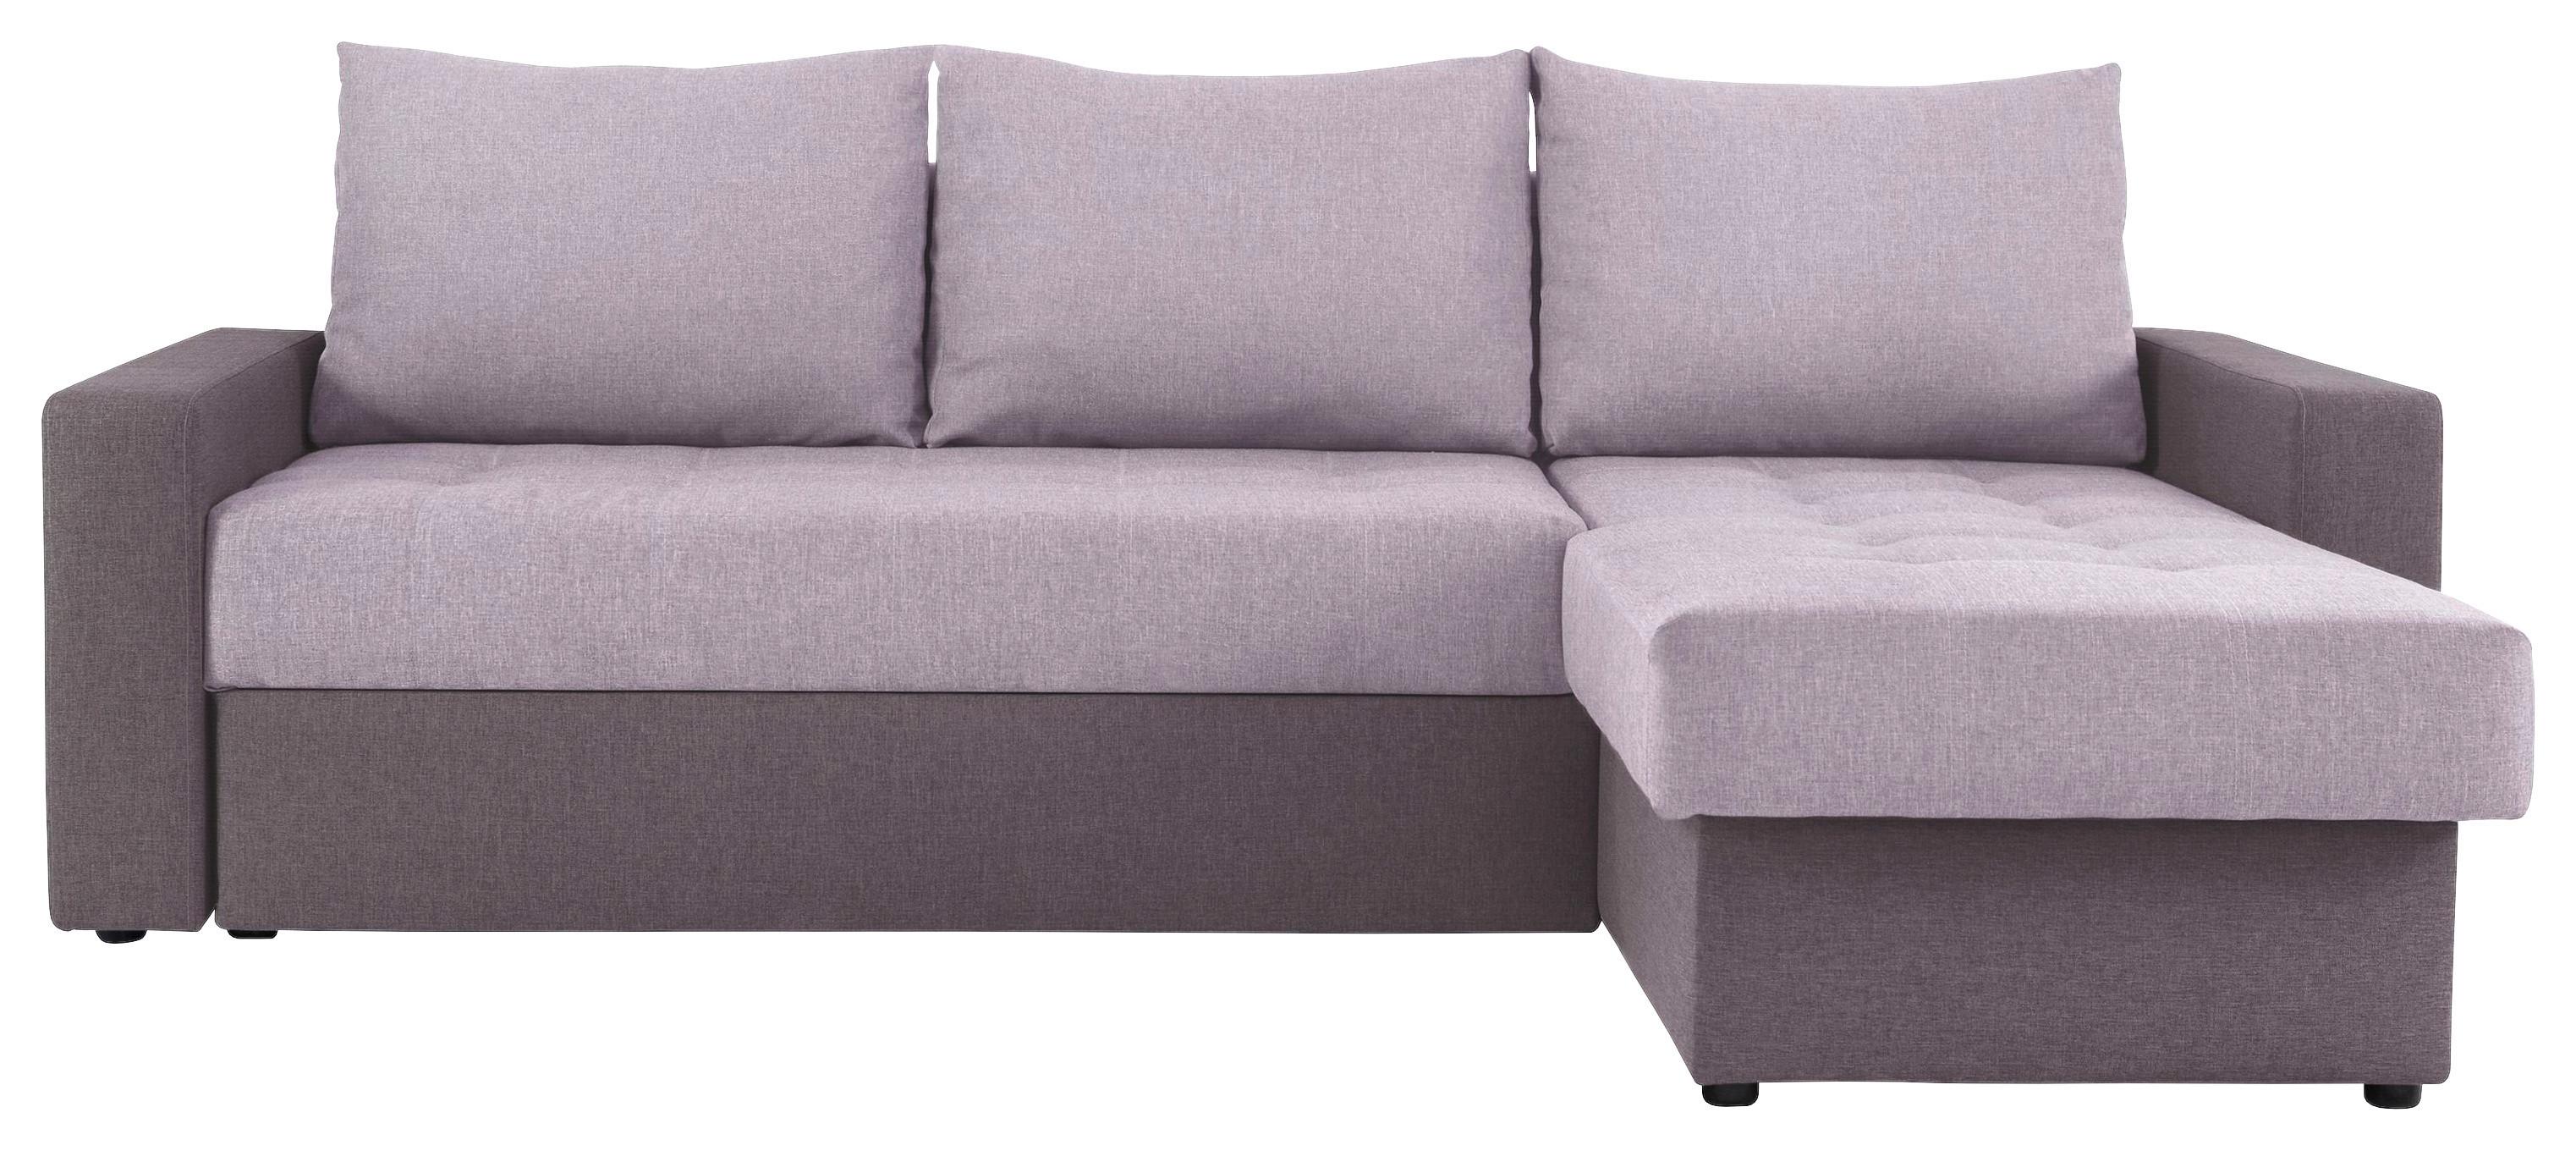 Sedežna Garnitura Atlanta, Z Ležiščem - roza/črna, Moderno, tekstil (230/160cm) - Modern Living